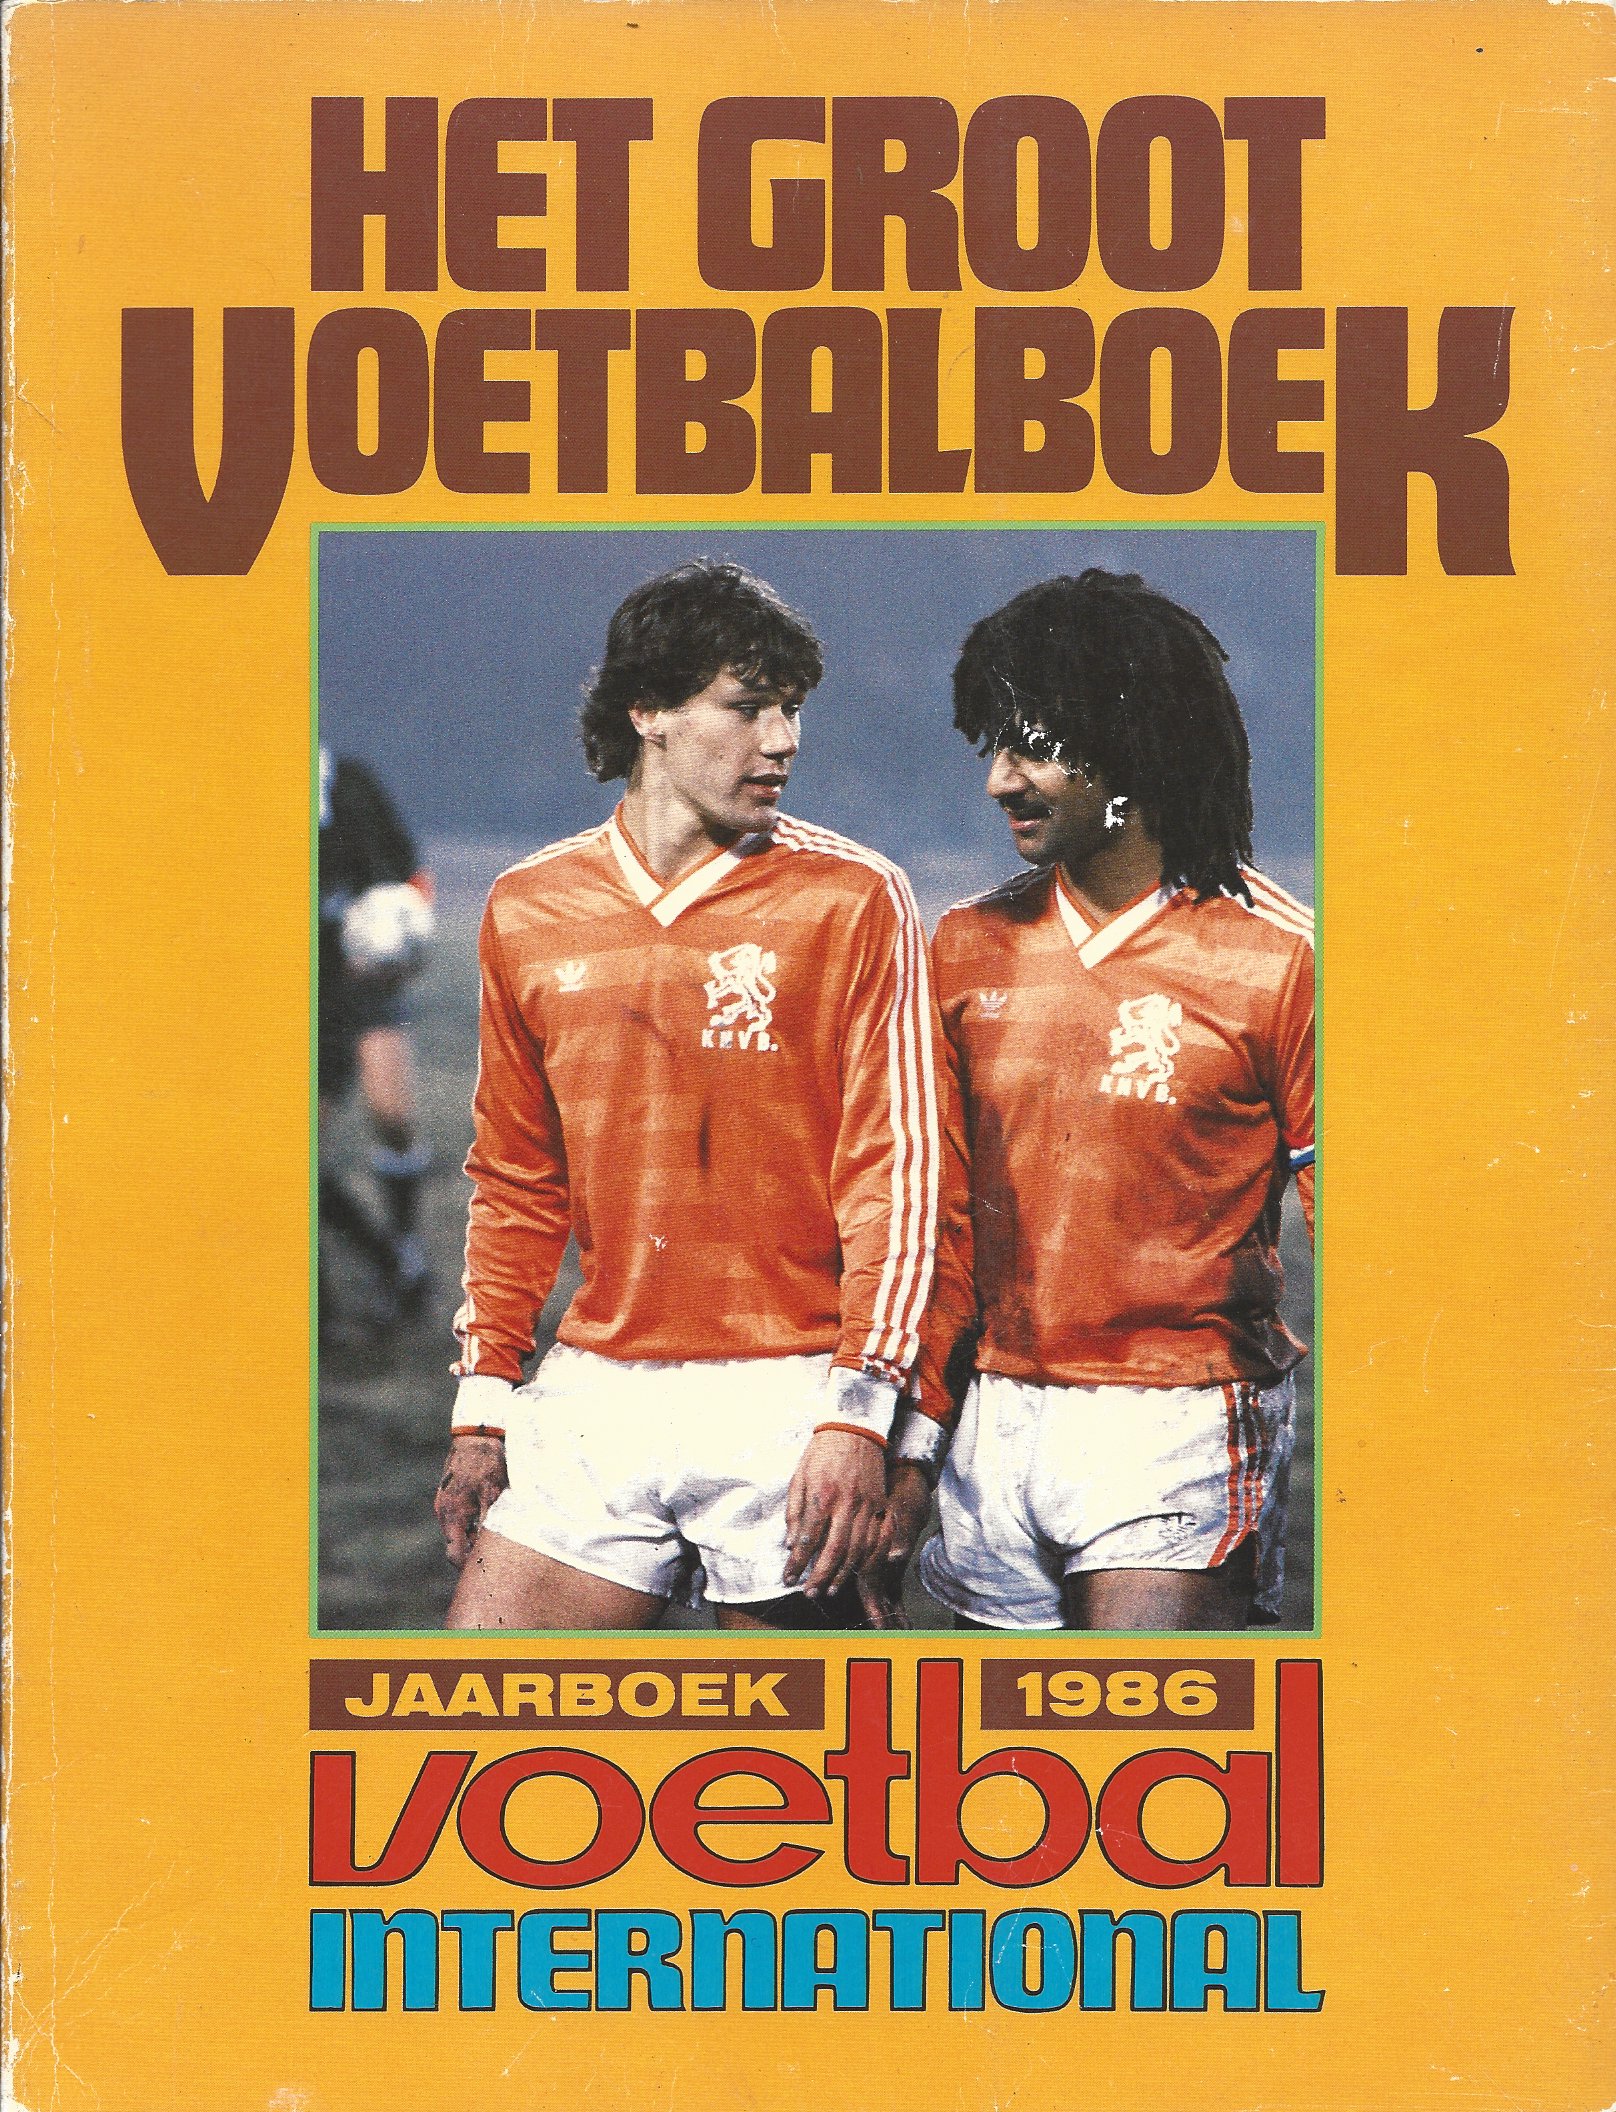 Cuilenborg, Cees van - Het groot voetbalboek: jaarboek 1986 Voetbal International